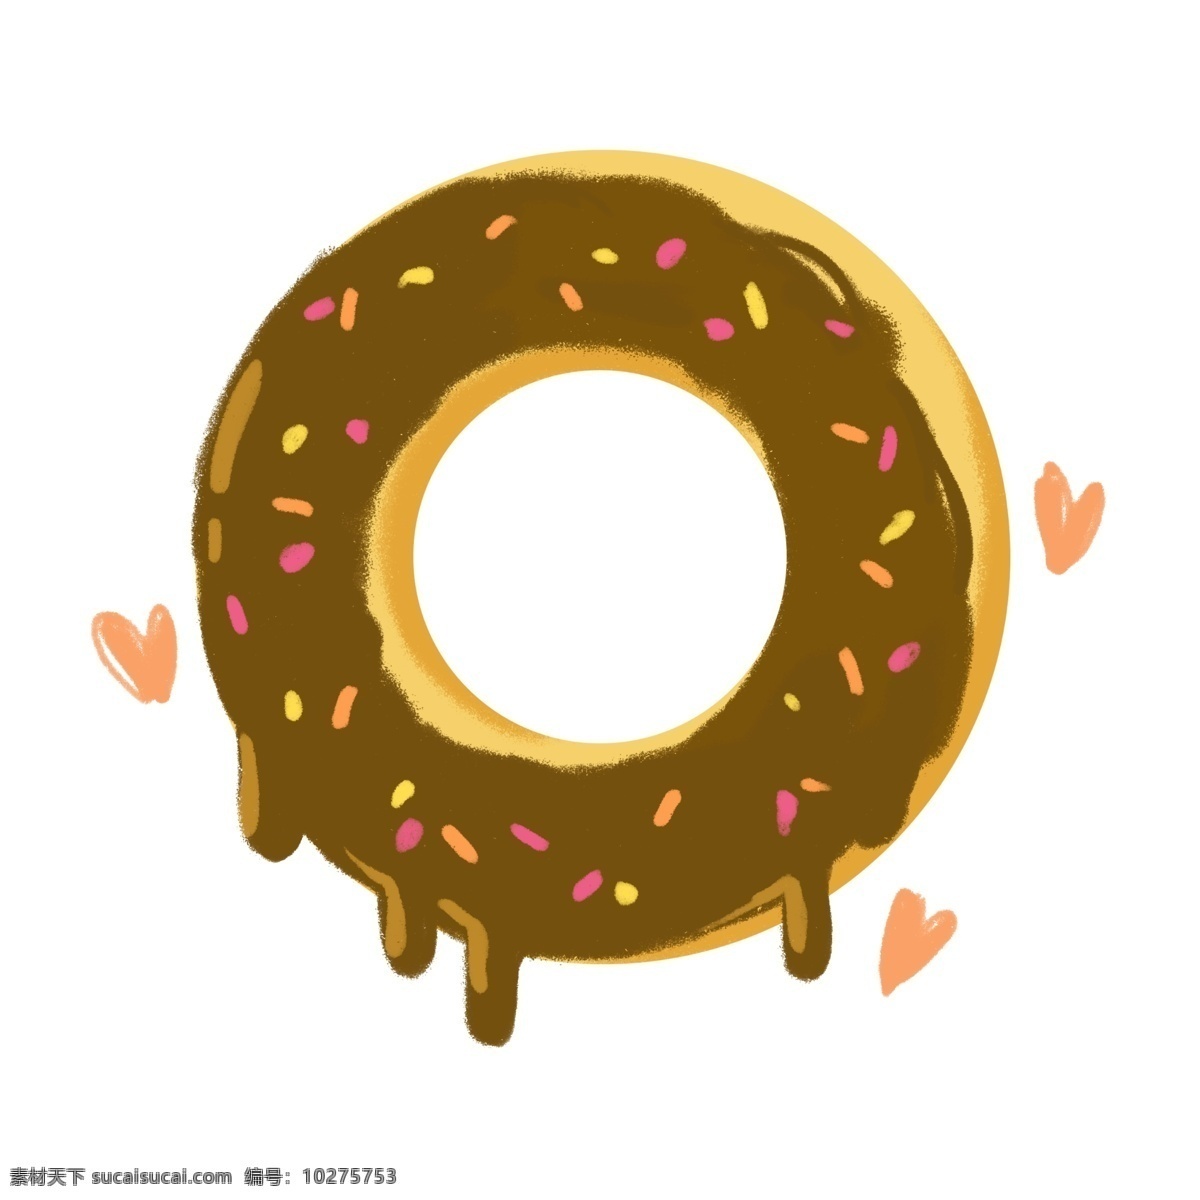 巧克力 甜甜 圈 插图 饼干甜甜圈 巧克力甜甜圈 美味的甜甜圈 好吃的甜甜圈 饼干装饰 粉色心形 心形图案